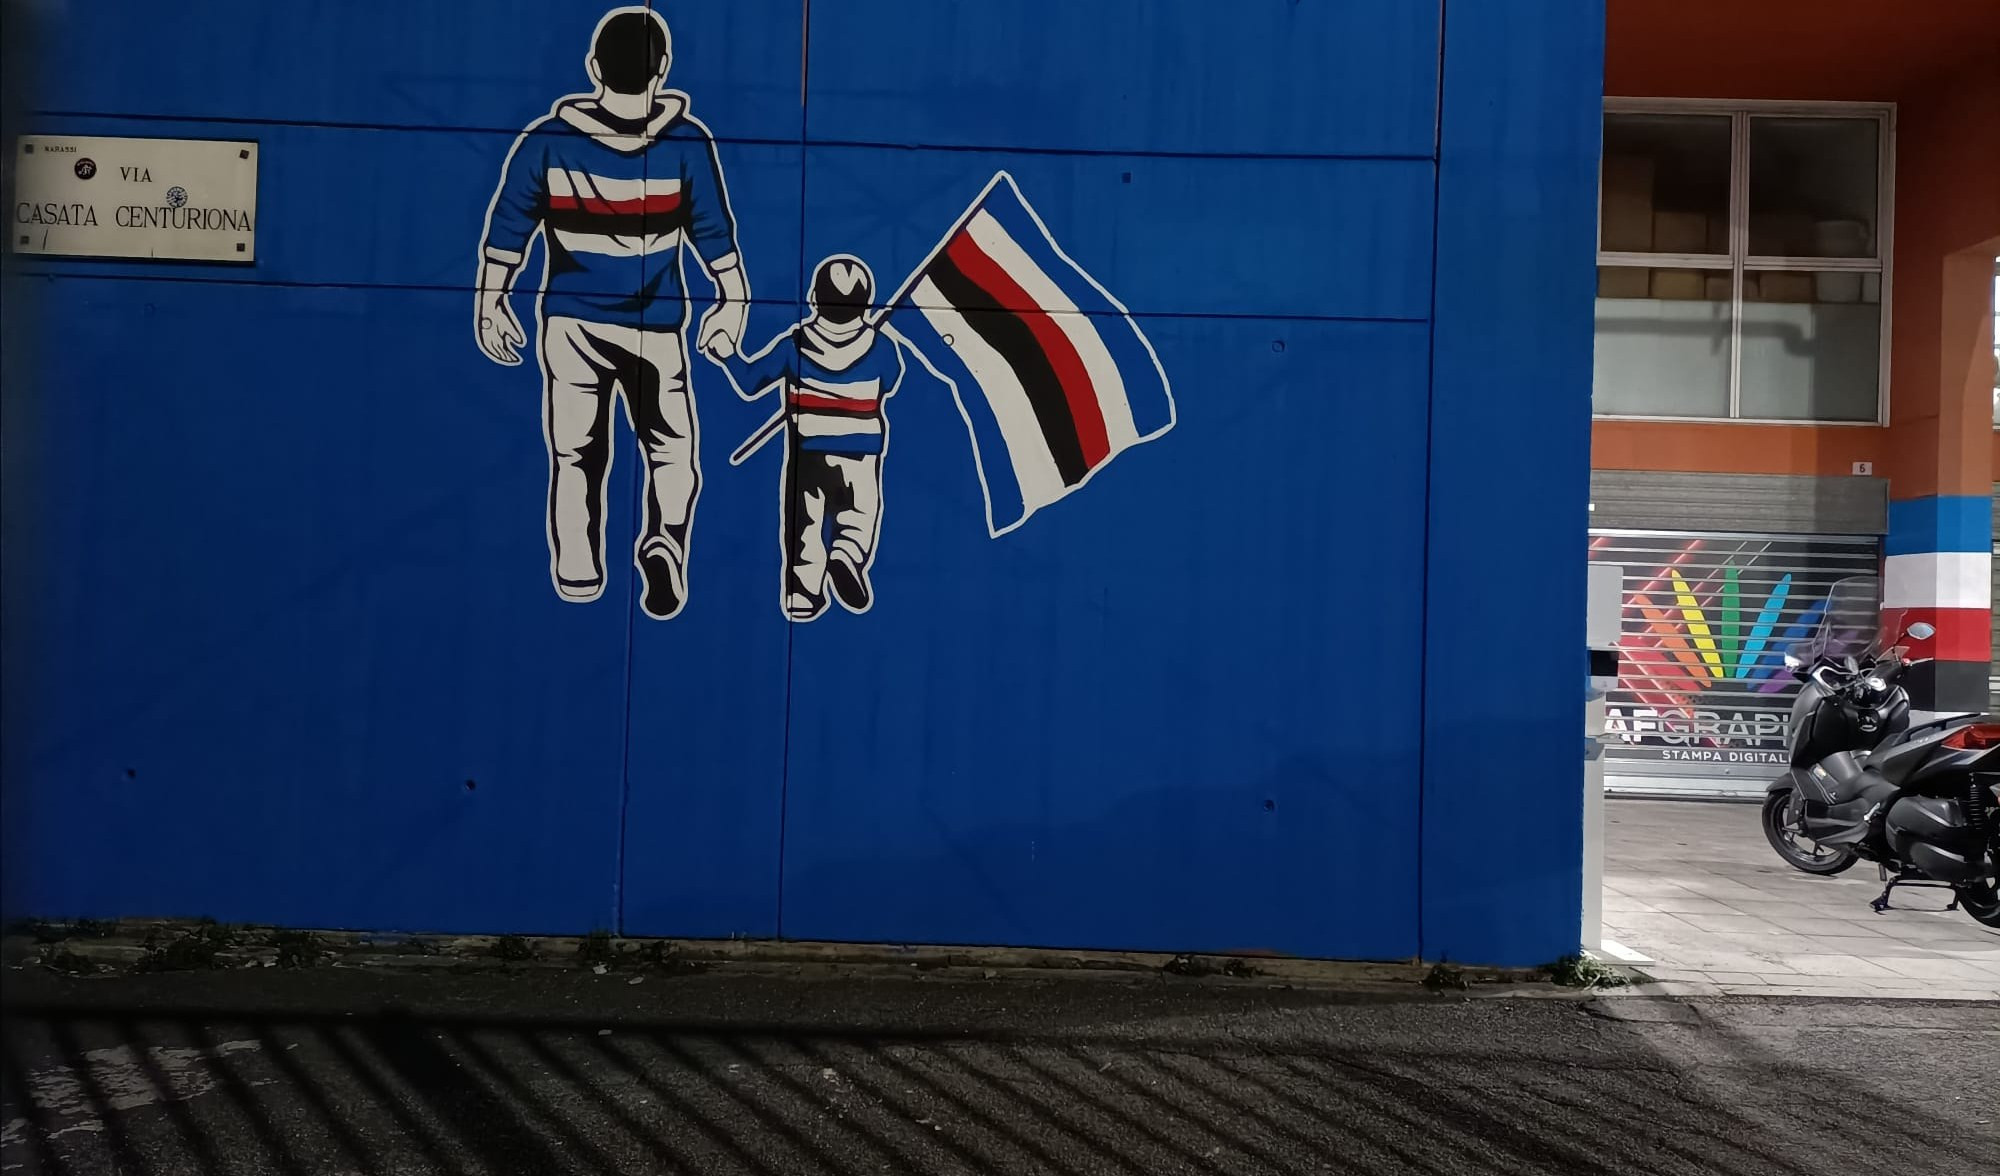 La Gradinata Sud con il nuovo murales: padre e figlio con la bandiera della Sampdoria